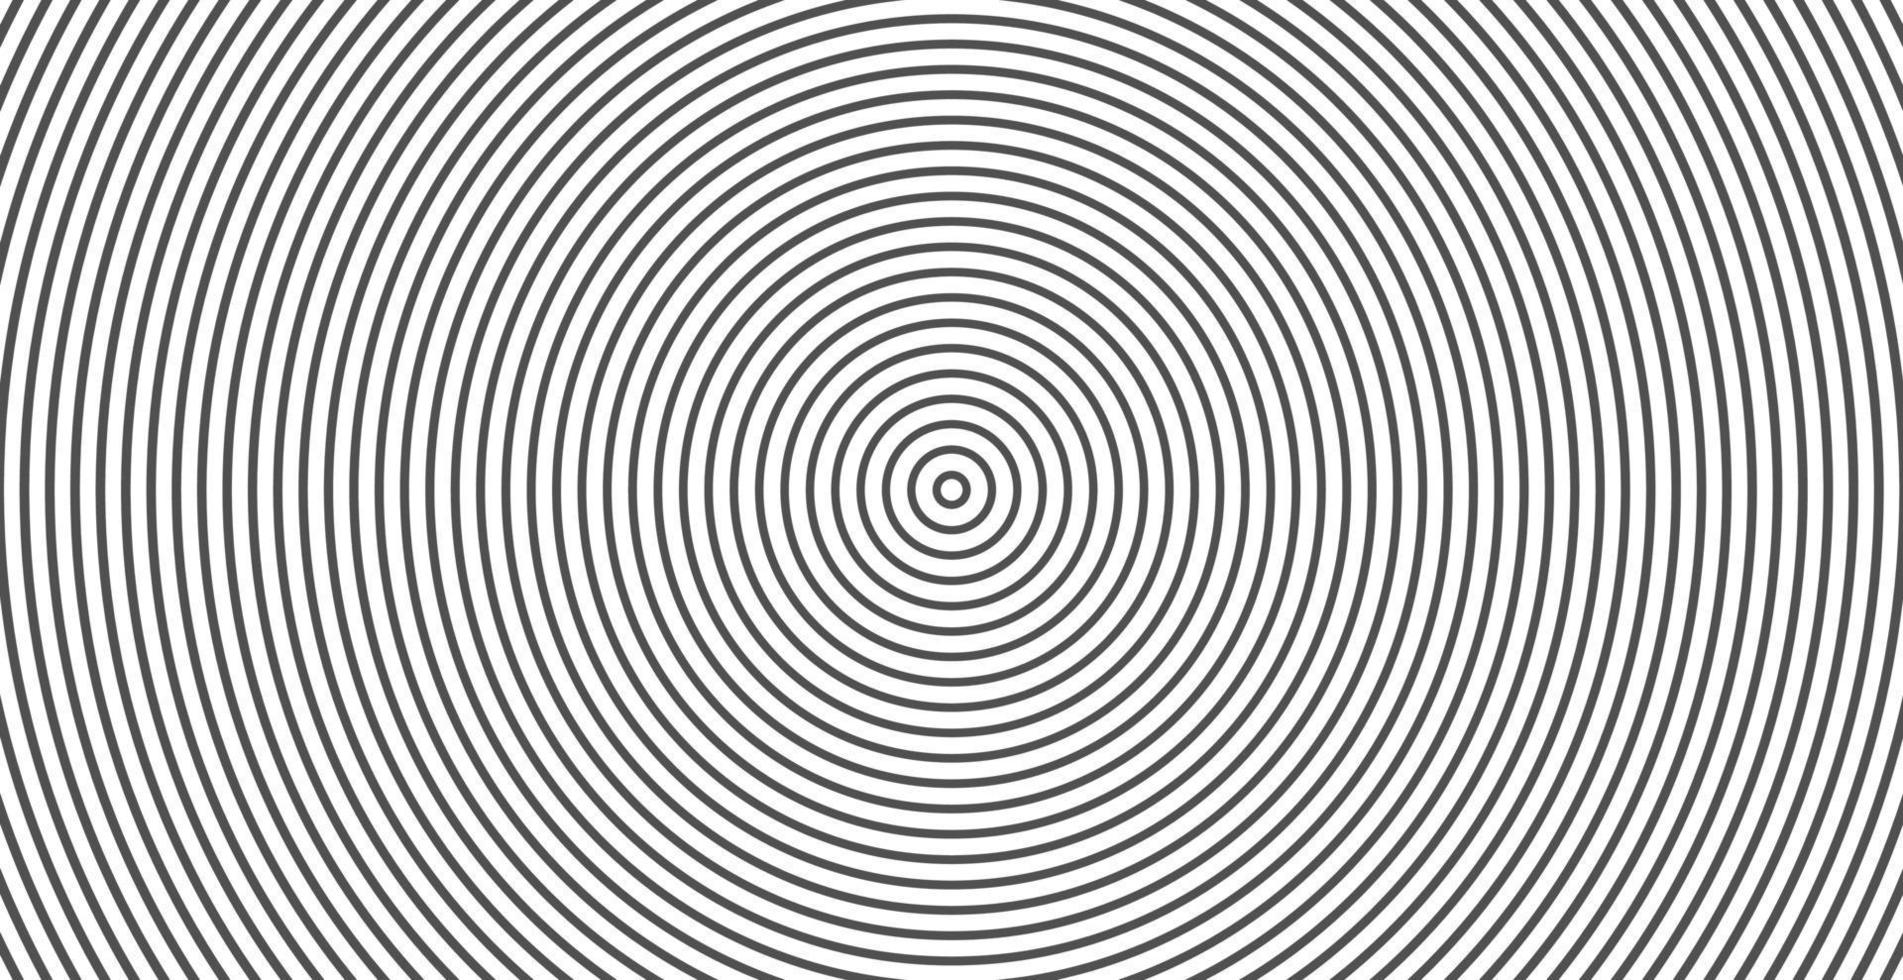 cercle concentrique. illustration pour onde sonore. motif de ligne de cercle abstrait. graphiques en noir et blanc vecteur